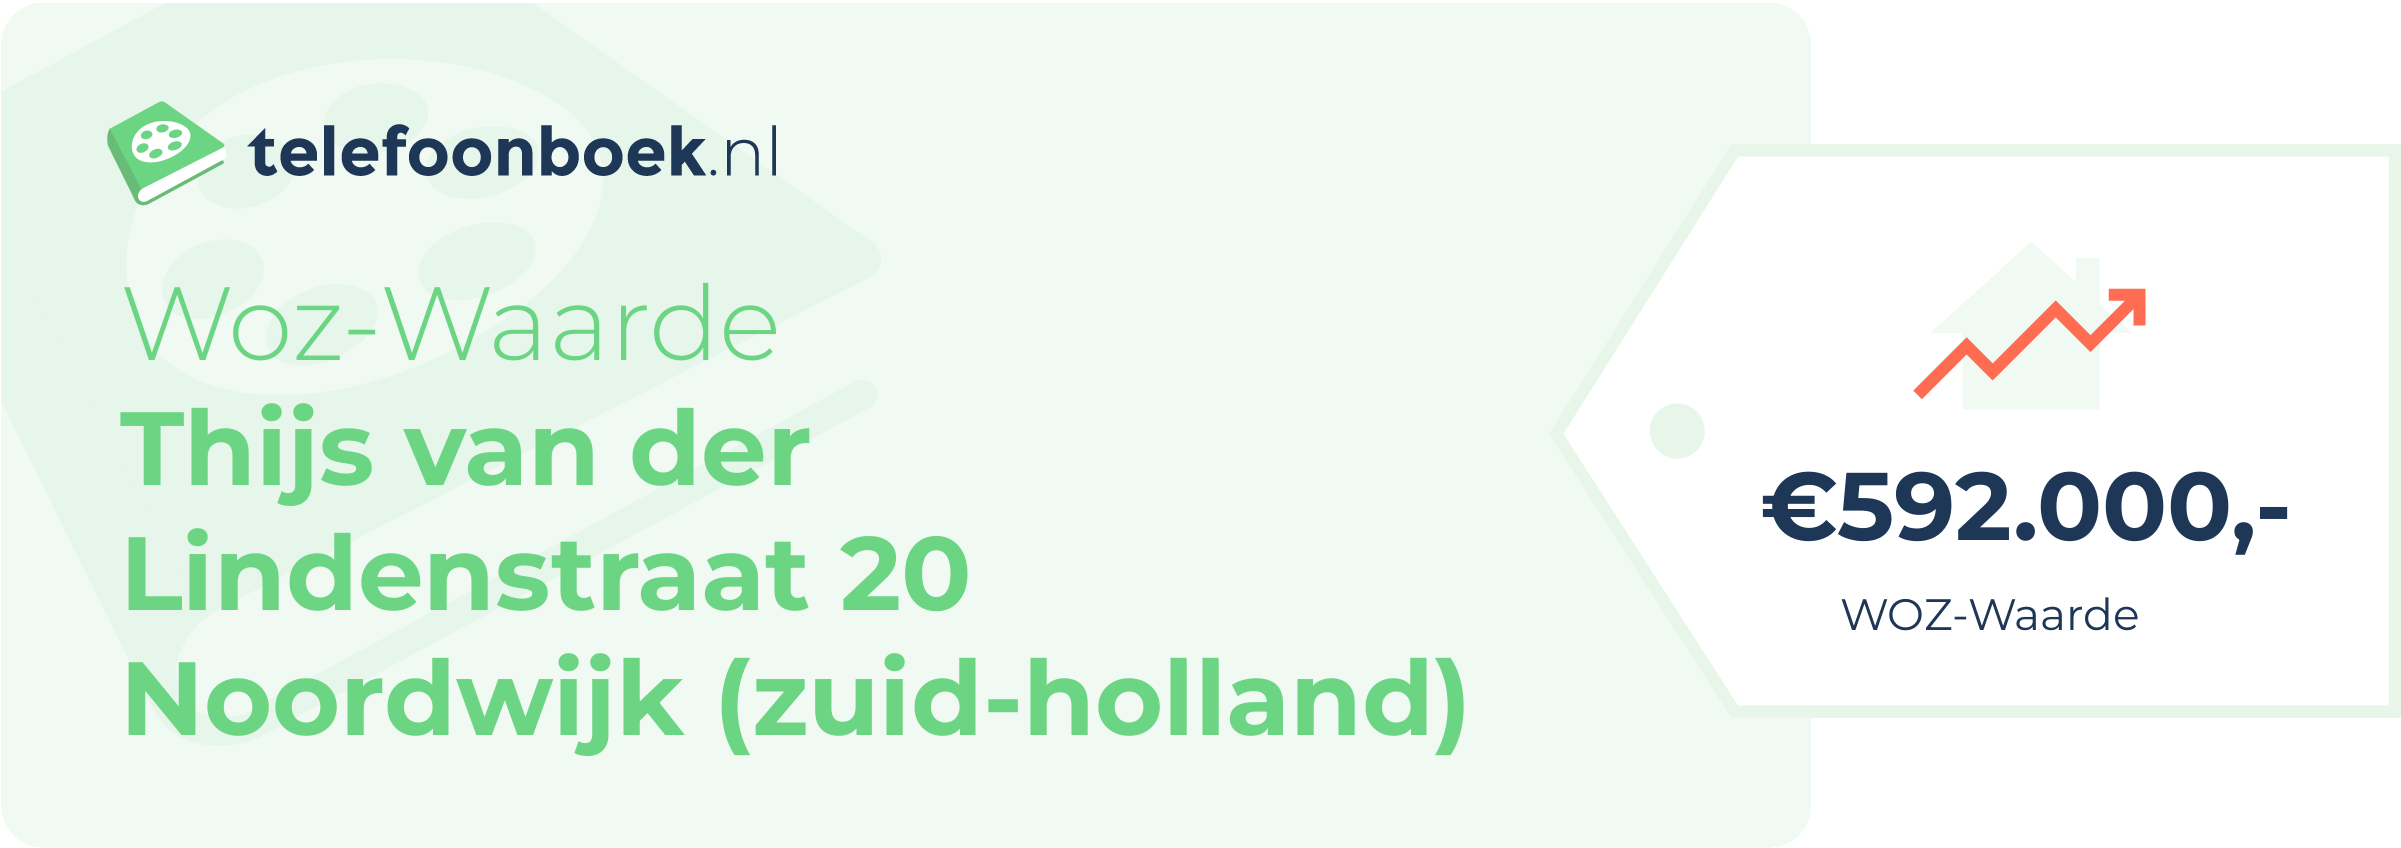 WOZ-waarde Thijs Van Der Lindenstraat 20 Noordwijk (Zuid-Holland)